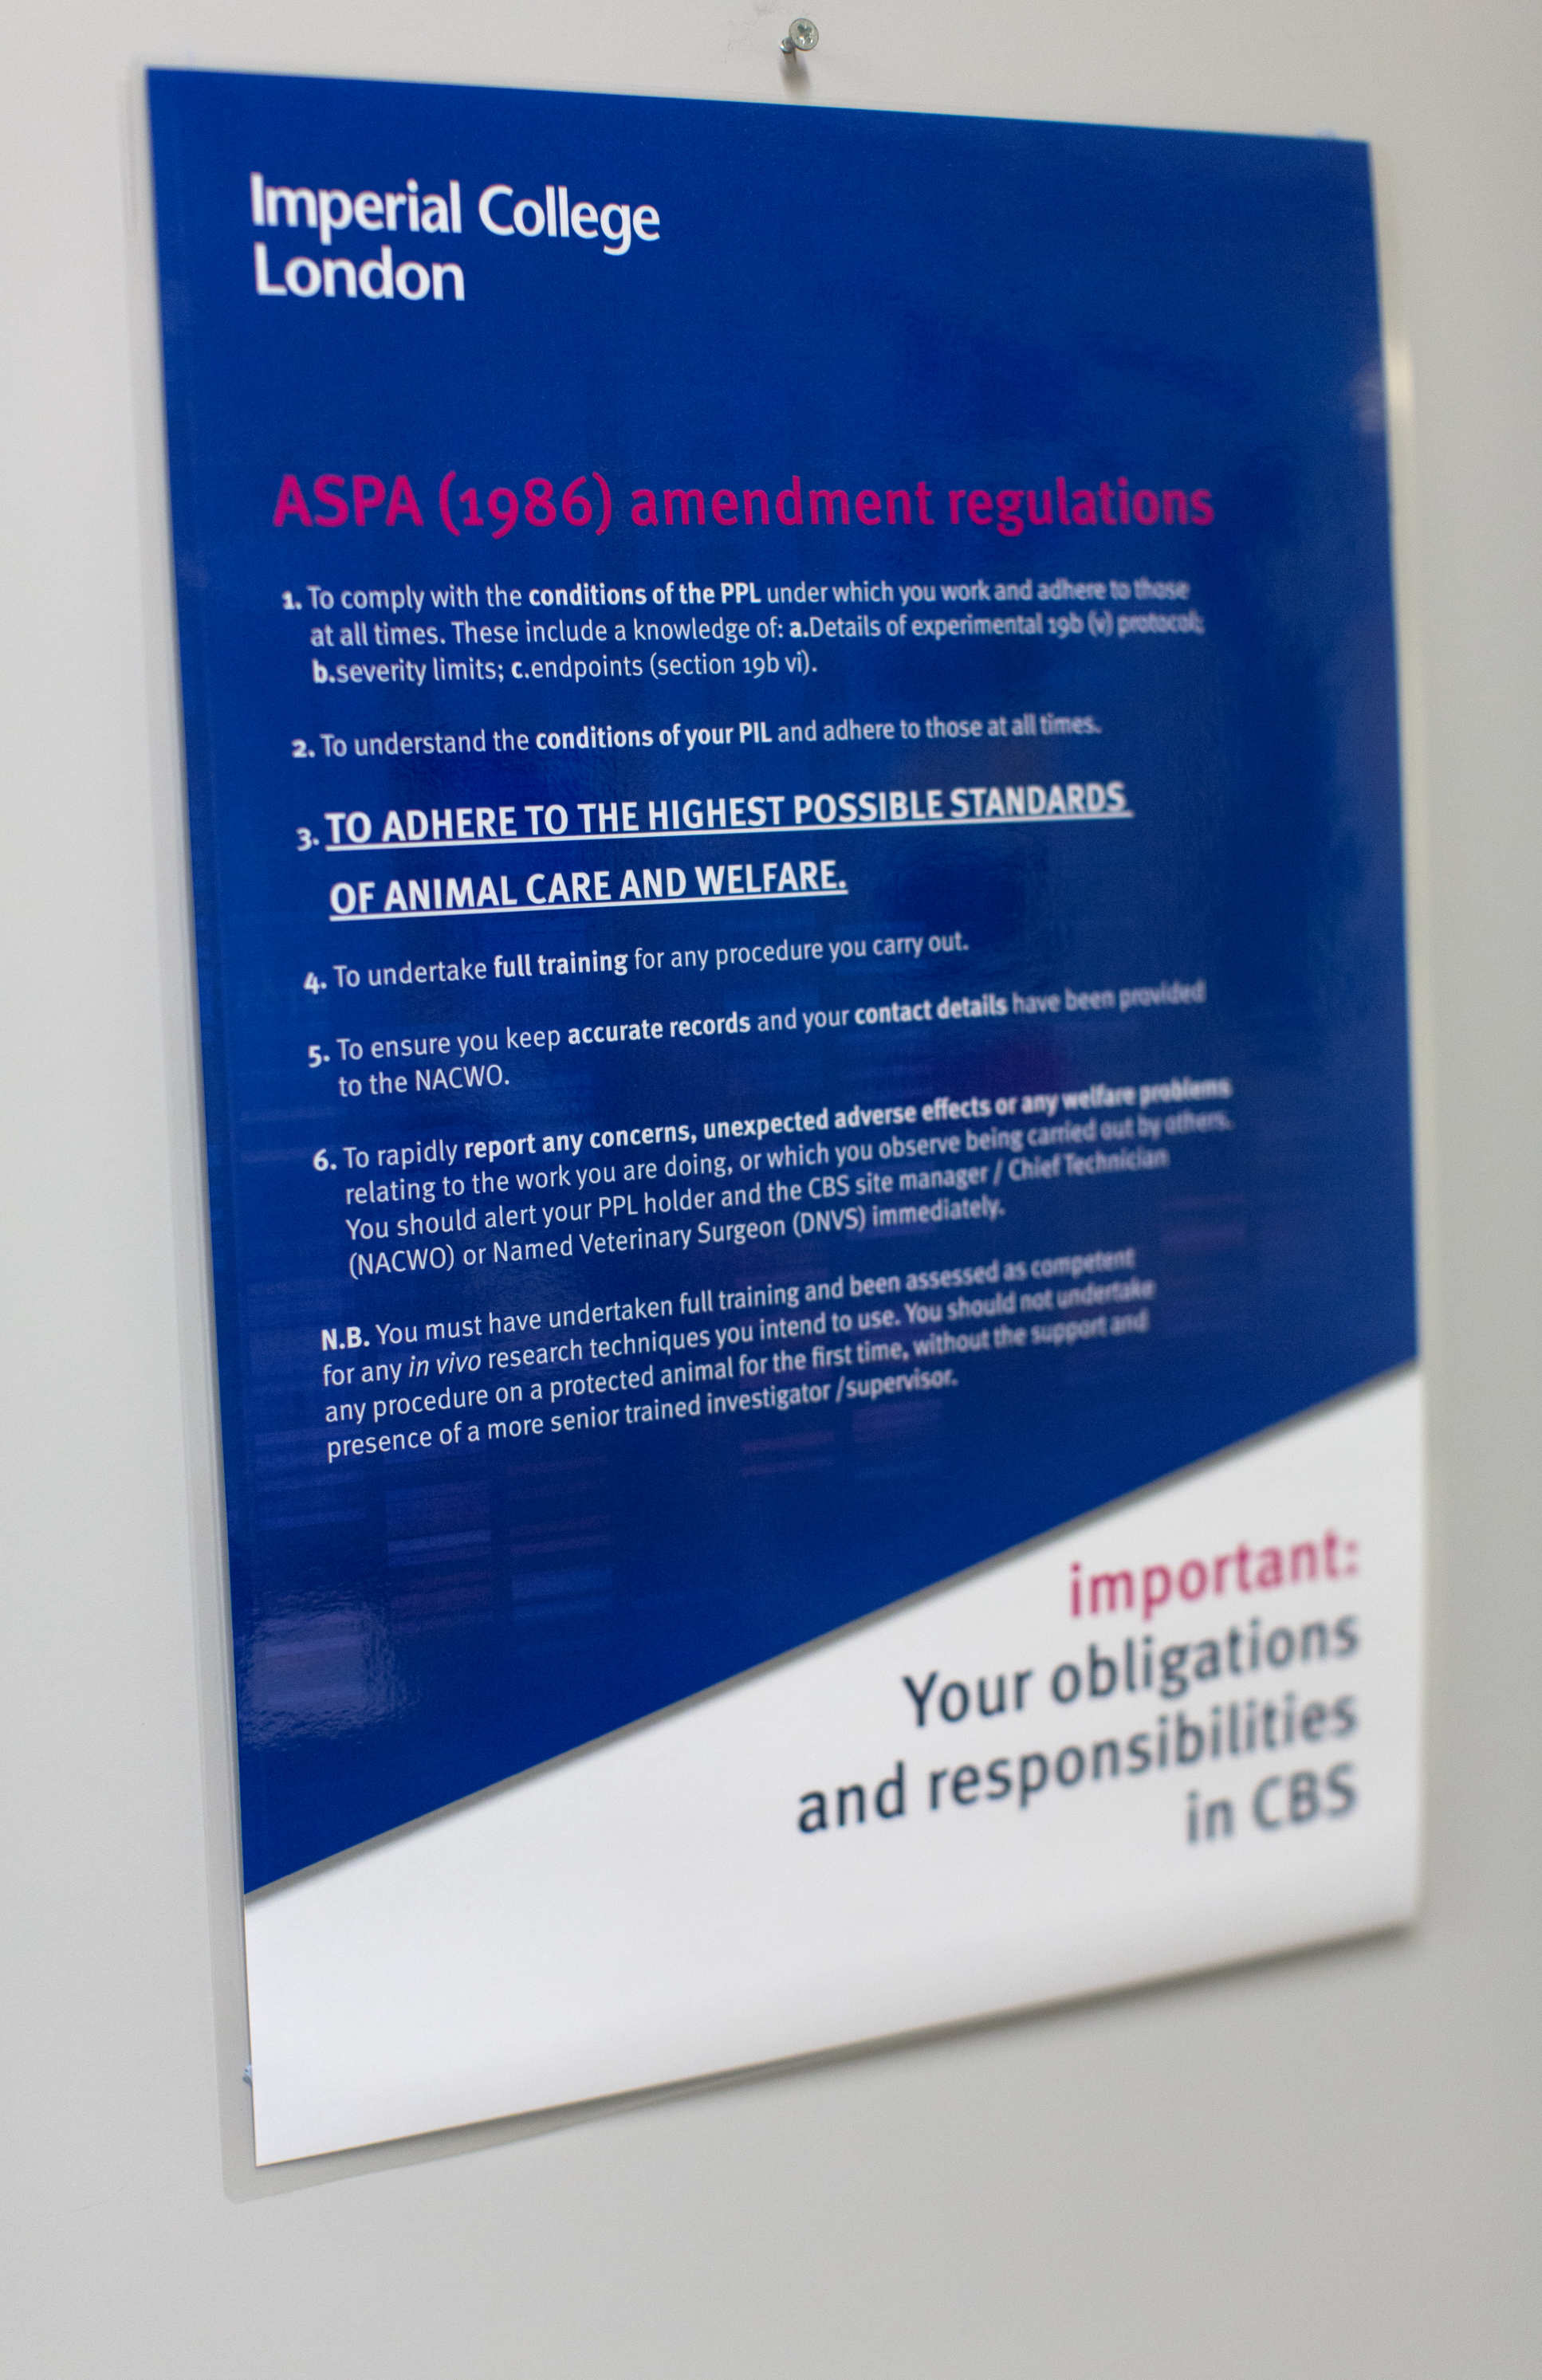 ASPA Amendment regulations